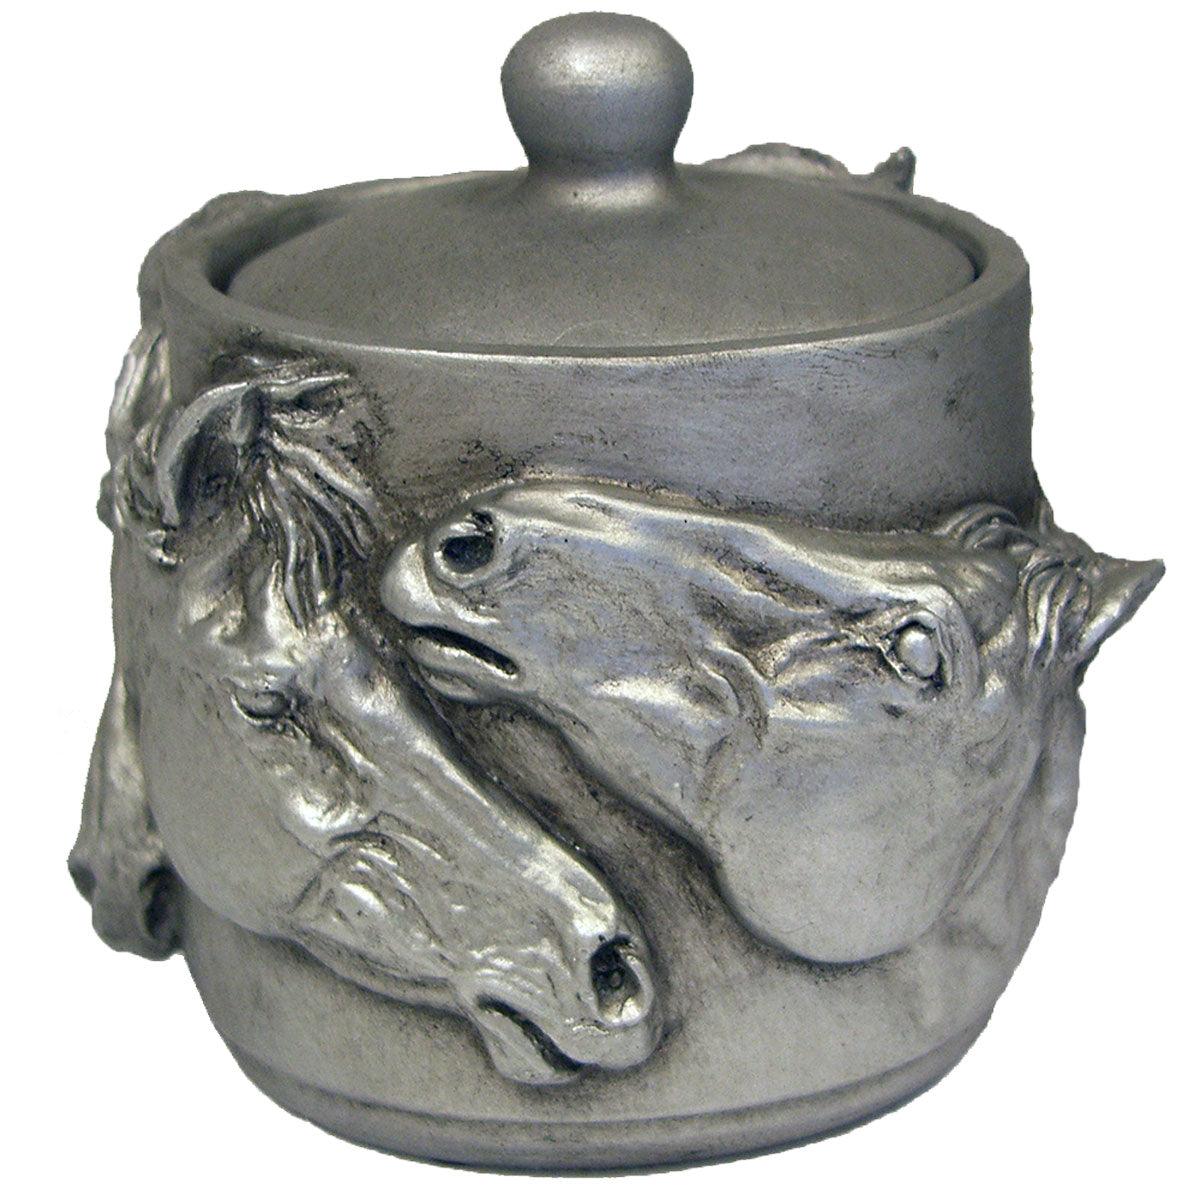 Pot with Lid Sculpture FOB